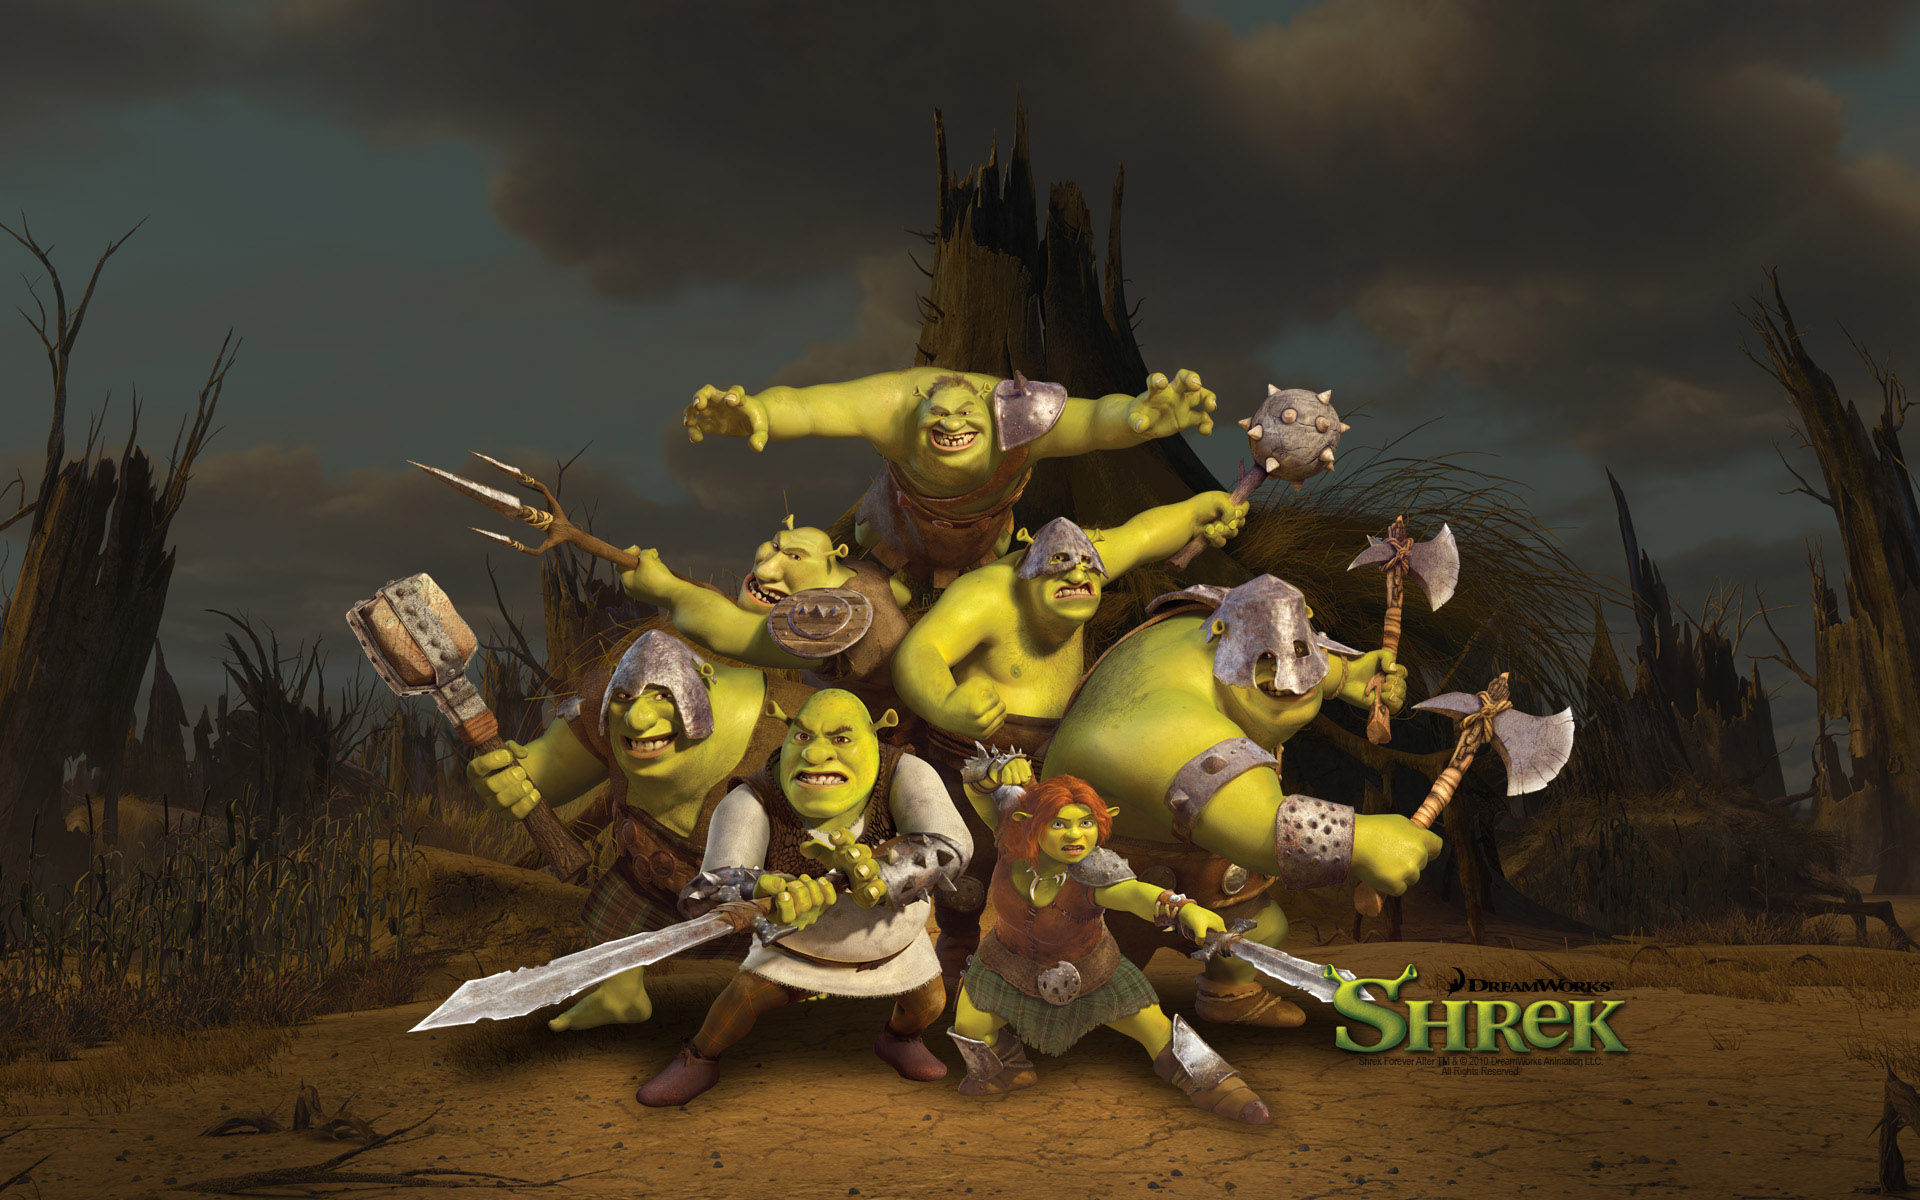 Shrek Forever After Wallpaper